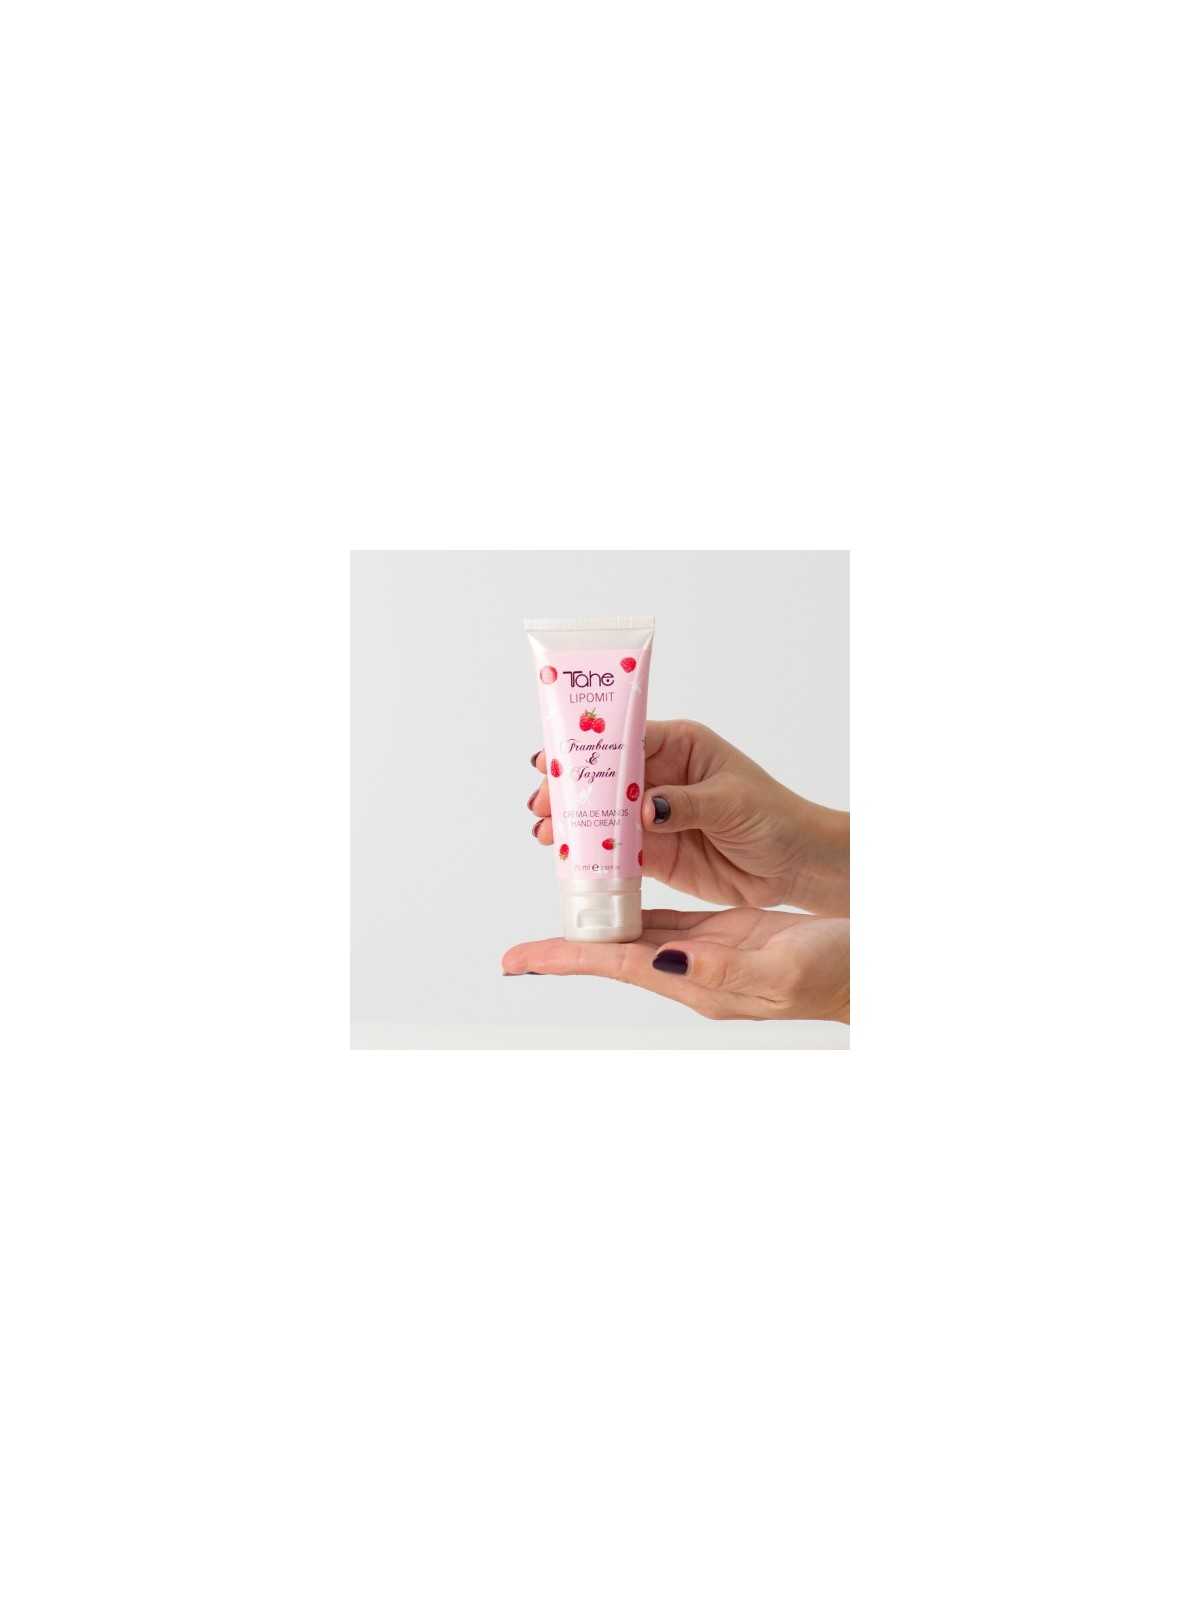 Comprar Crema de manos Lipomit Frambuesa y Jazmín 75ml en Manicura por sólo 3,90 € o un precio específico de 2,99 € en Thalie Care